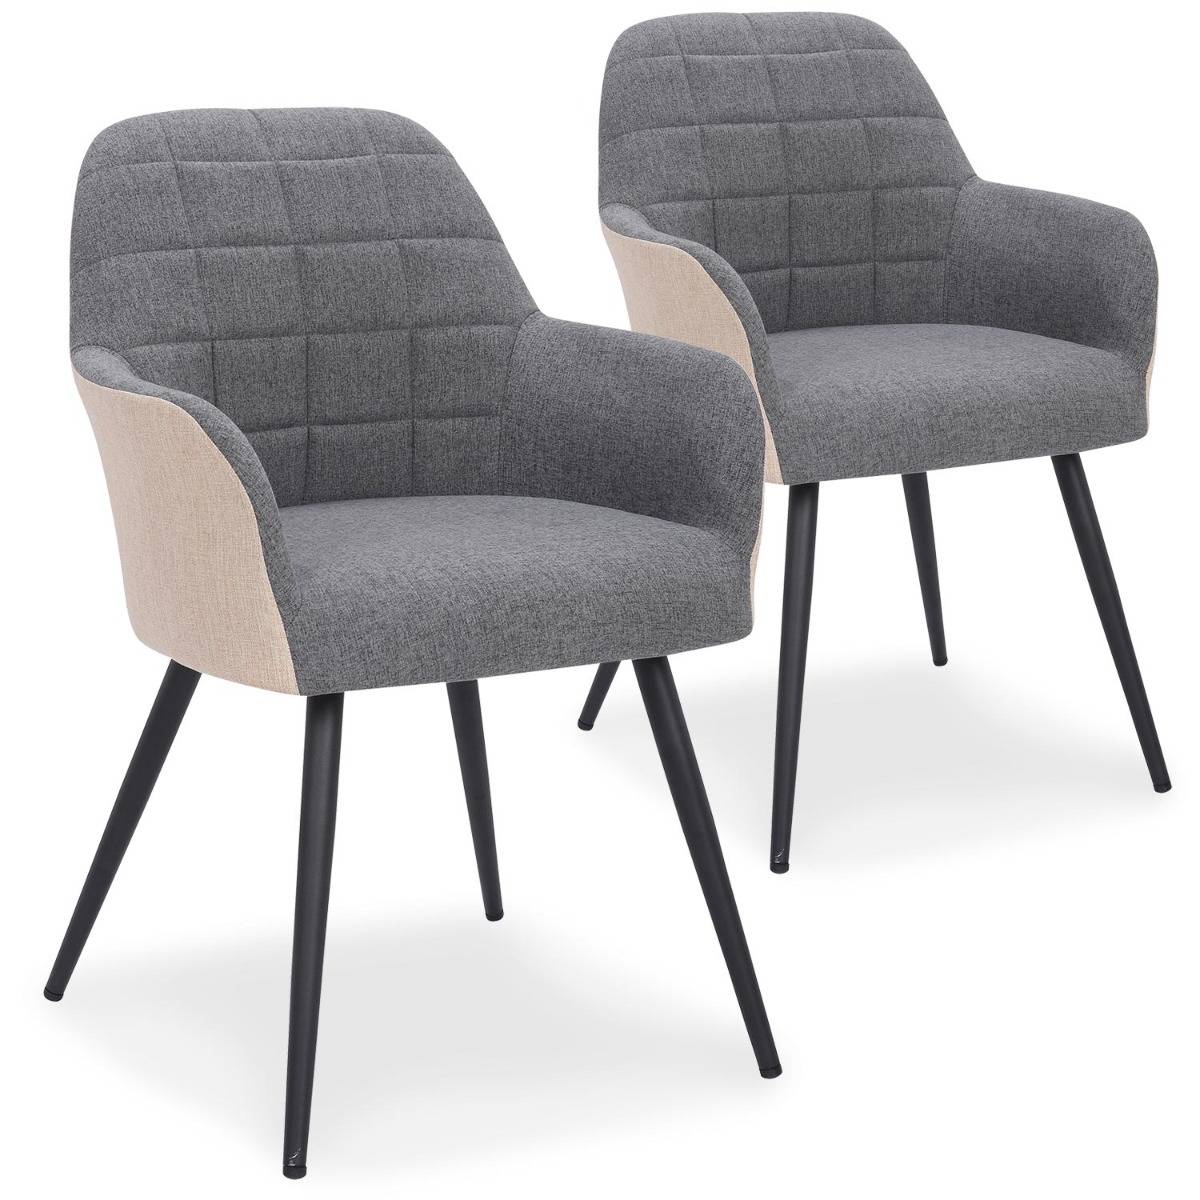 Set van 2 stoelen / fauteuils Unika grijs en beige stof